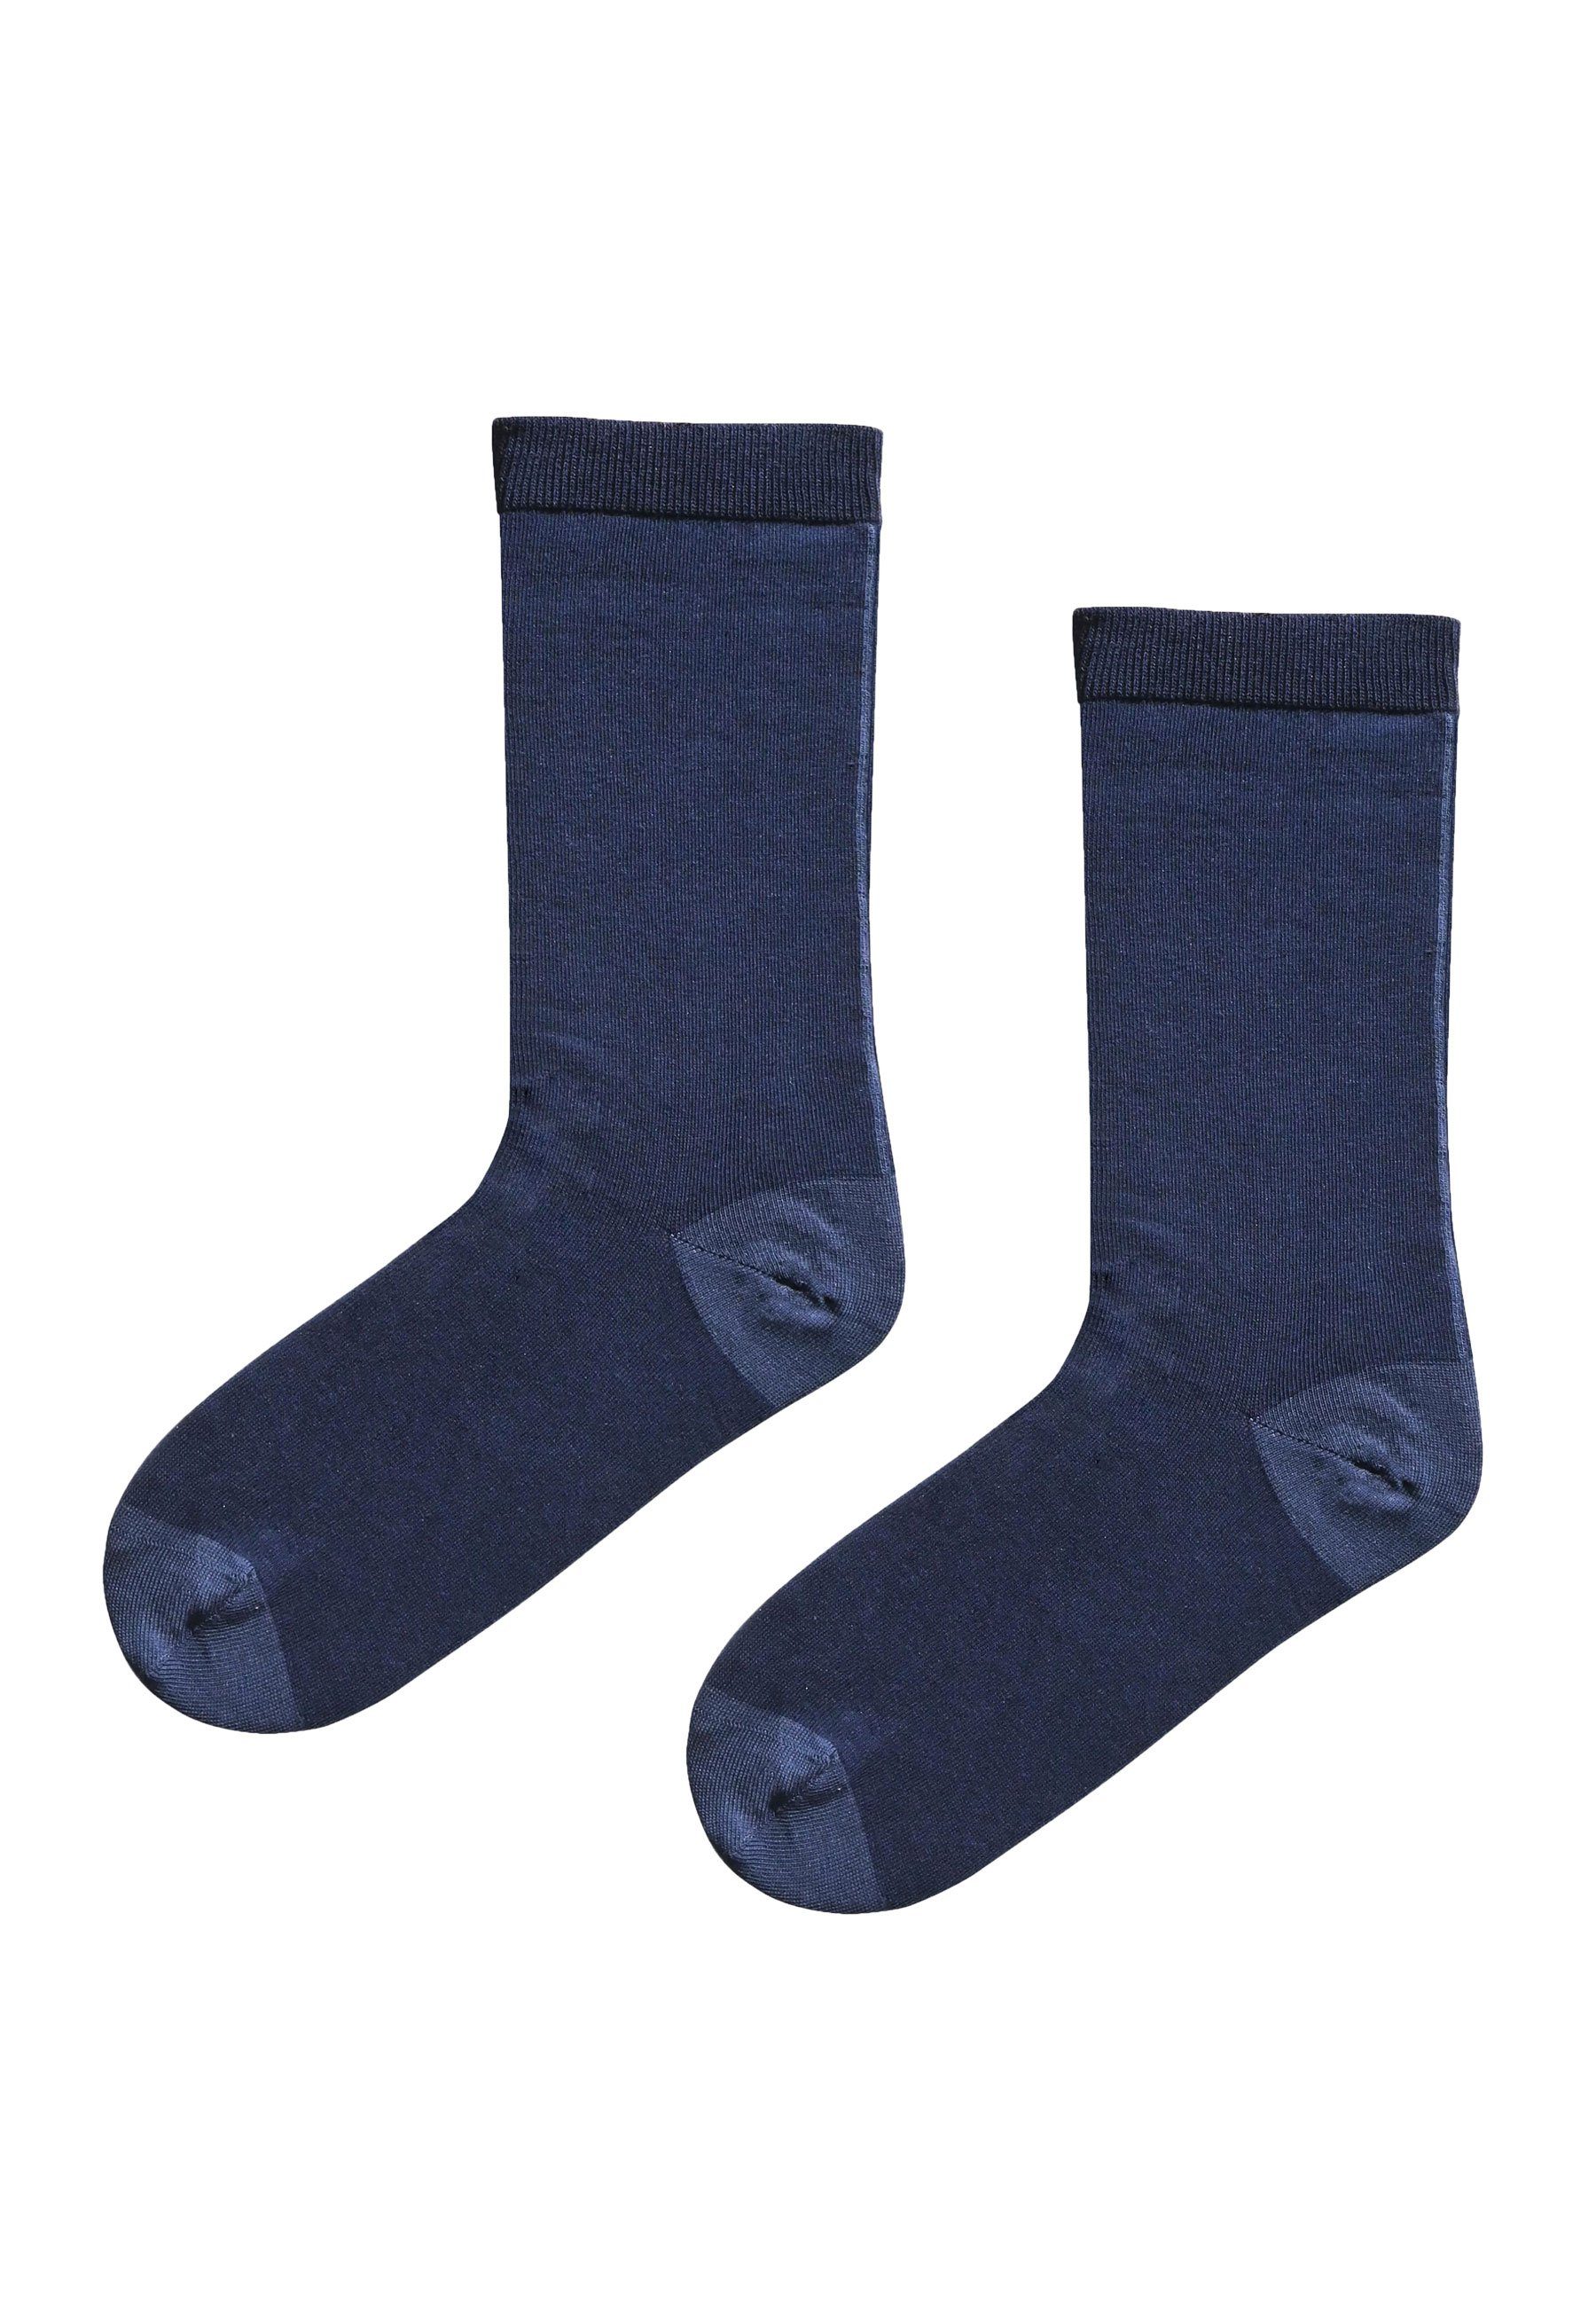 Socken - Schönefüsschen Socken blueshadow navy Elkline Schönefüsschen zweifarbig